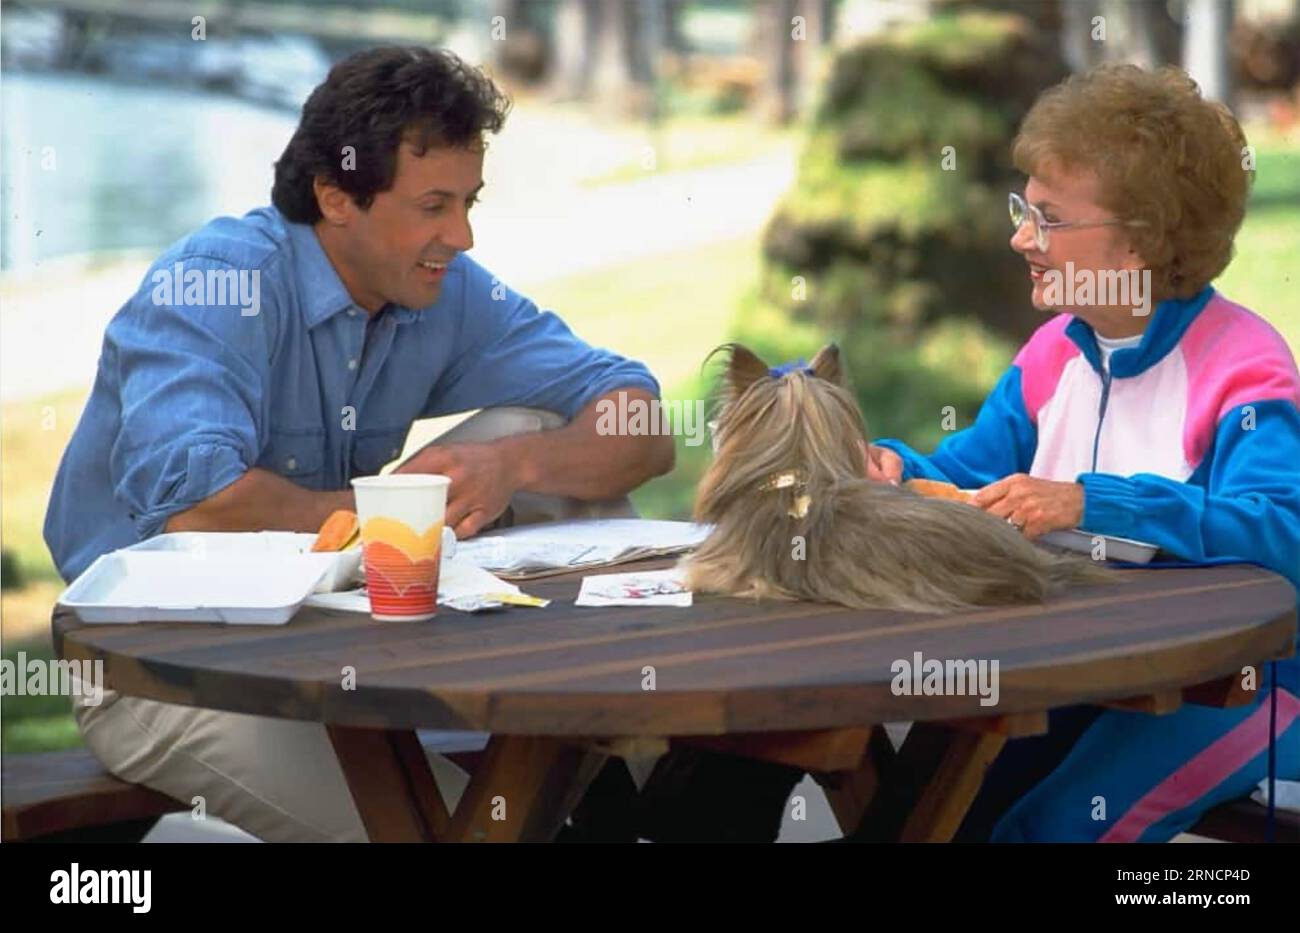 BASTA! O MIA MAMMA GIRERÀ 1992 film della Universal Pictures con Sylvester Stallone ed Estelle Getty Foto Stock